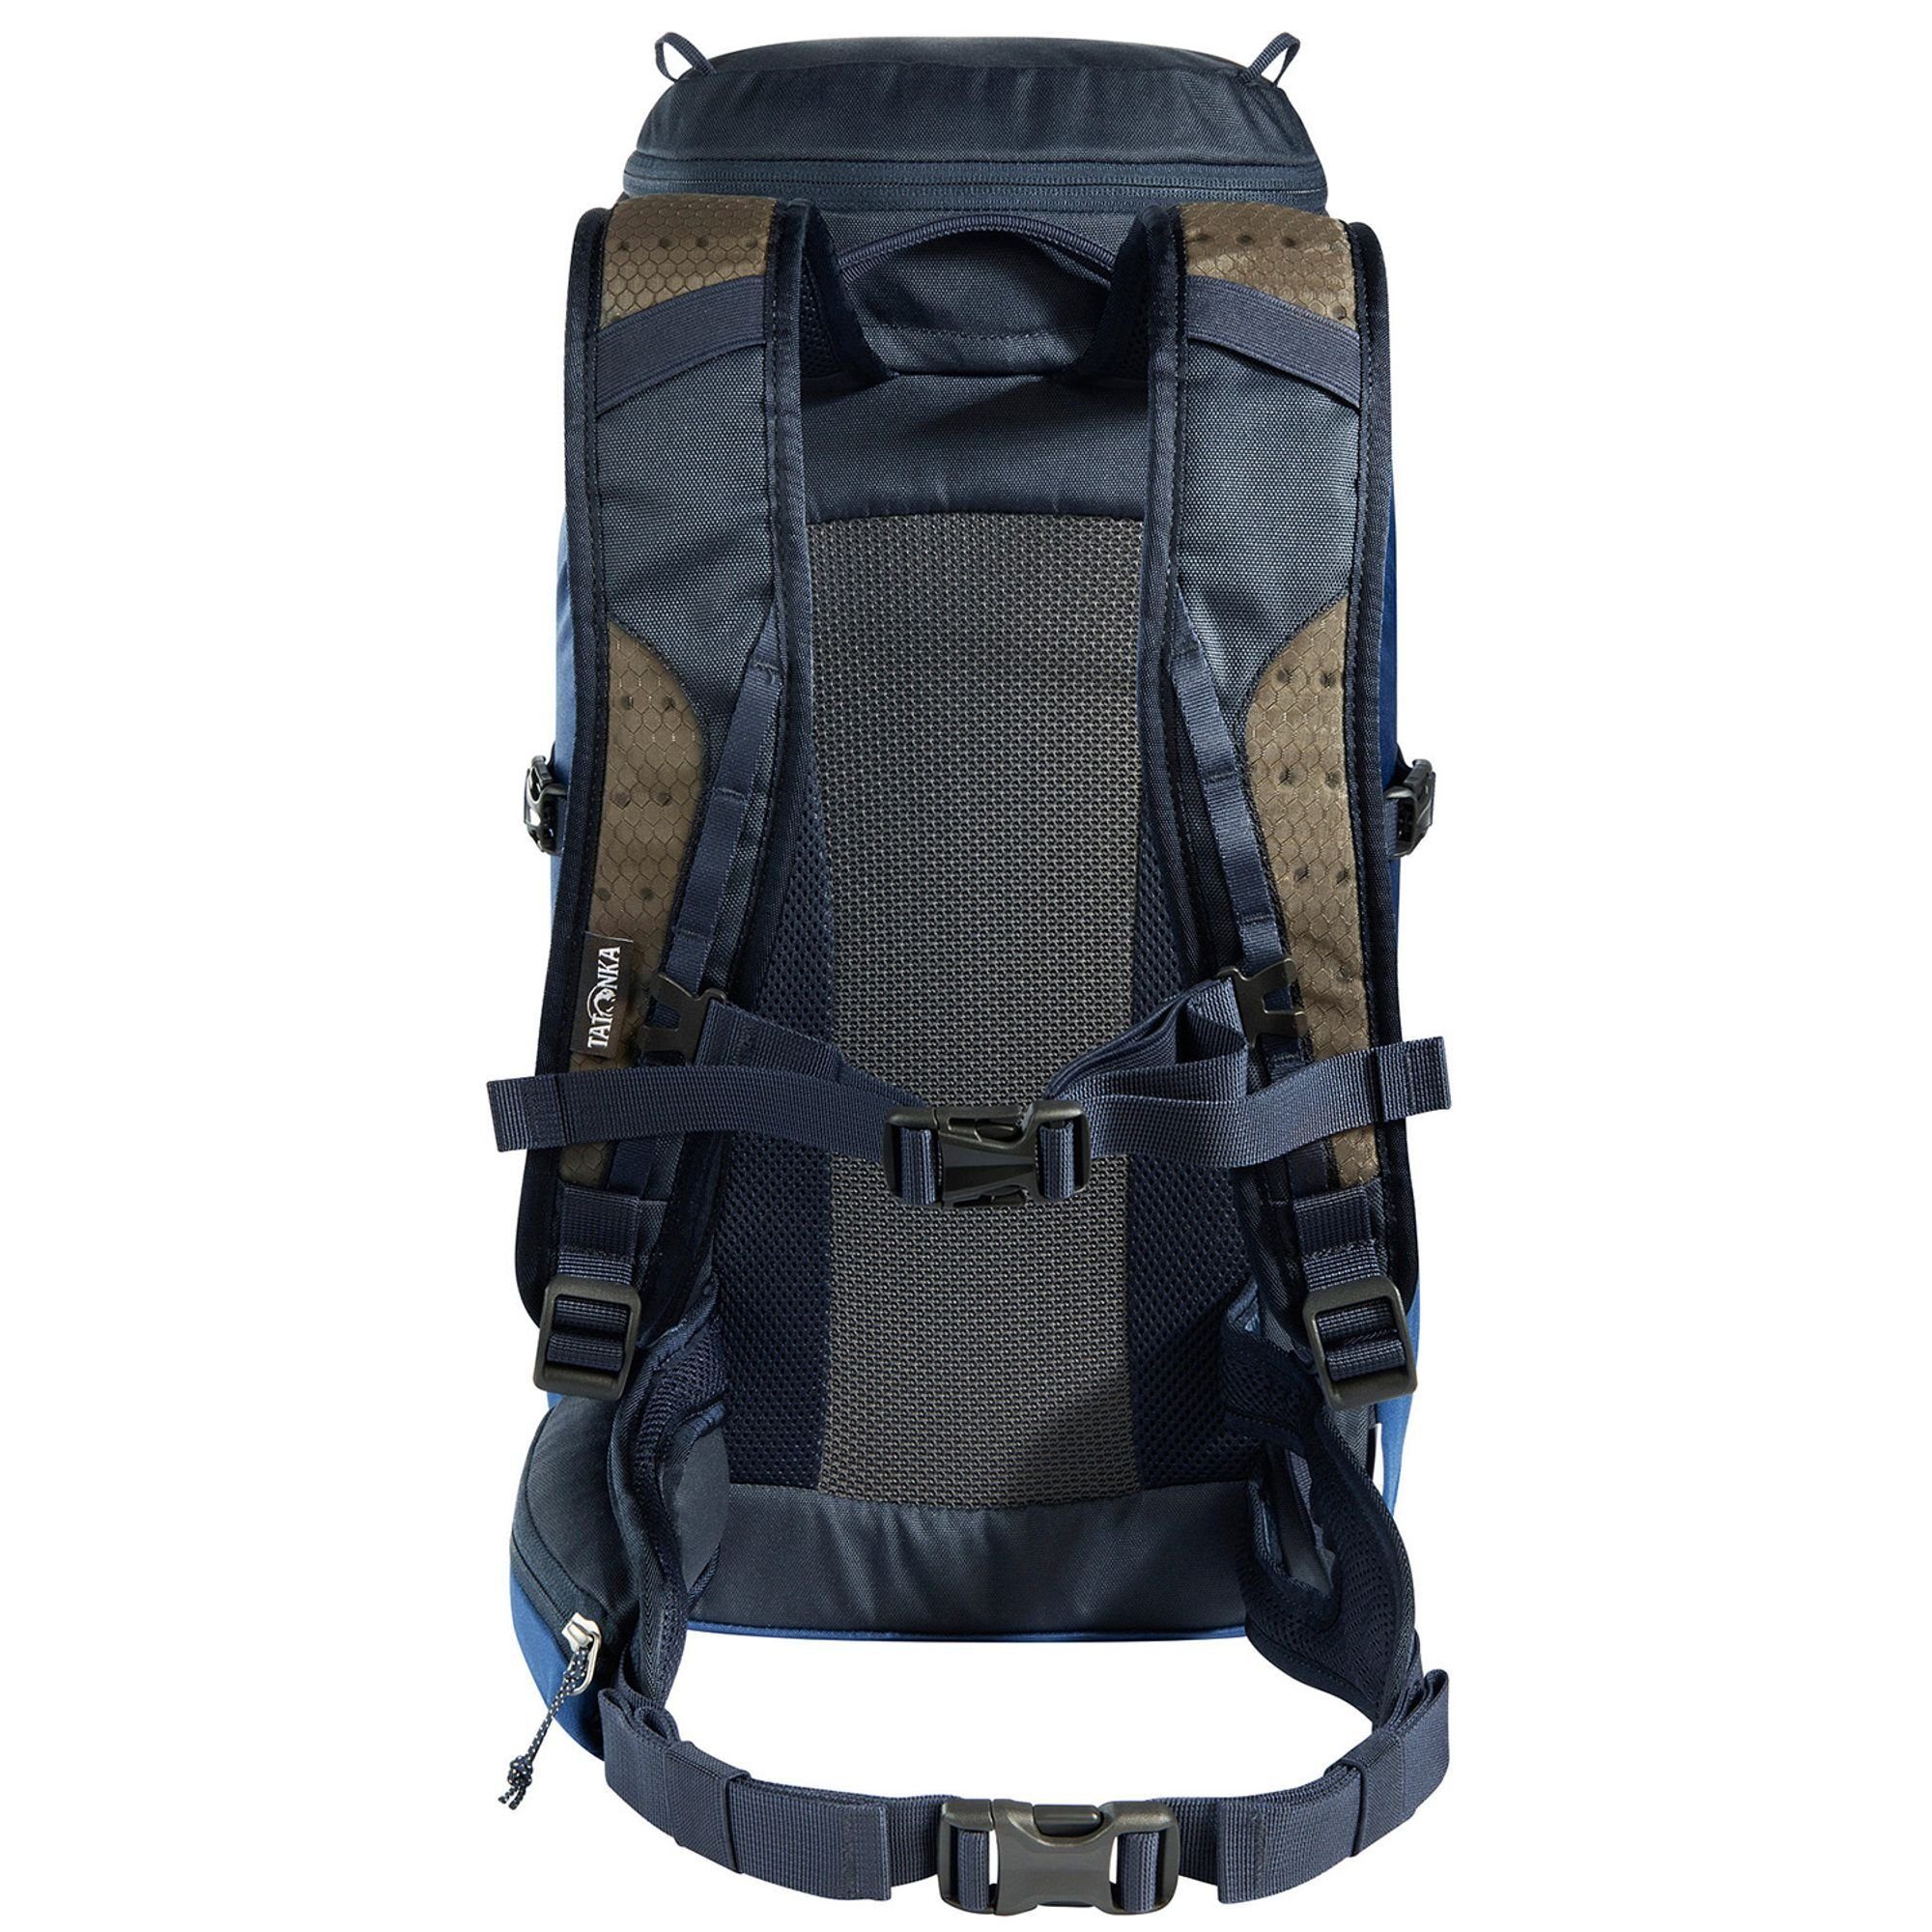 TATONKA® Wanderrucksack navy-darkerblue Polyamid Pack, Hike